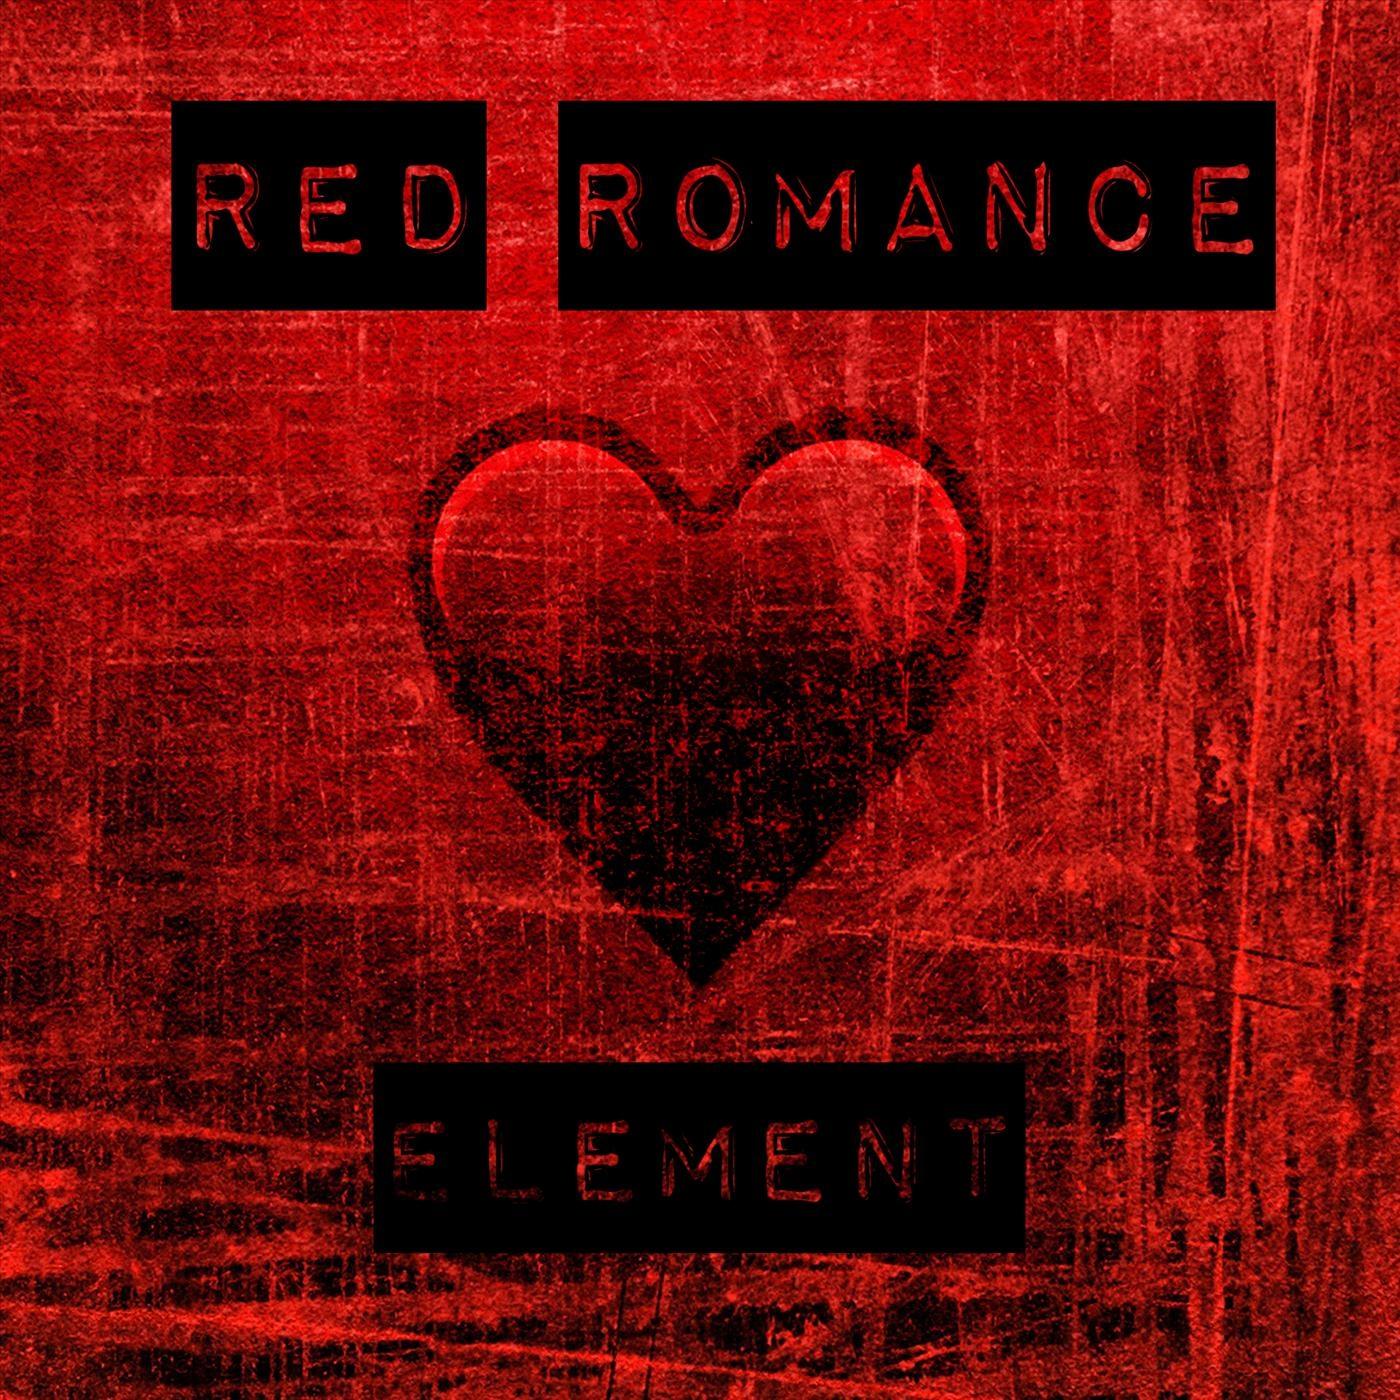 Red Romance